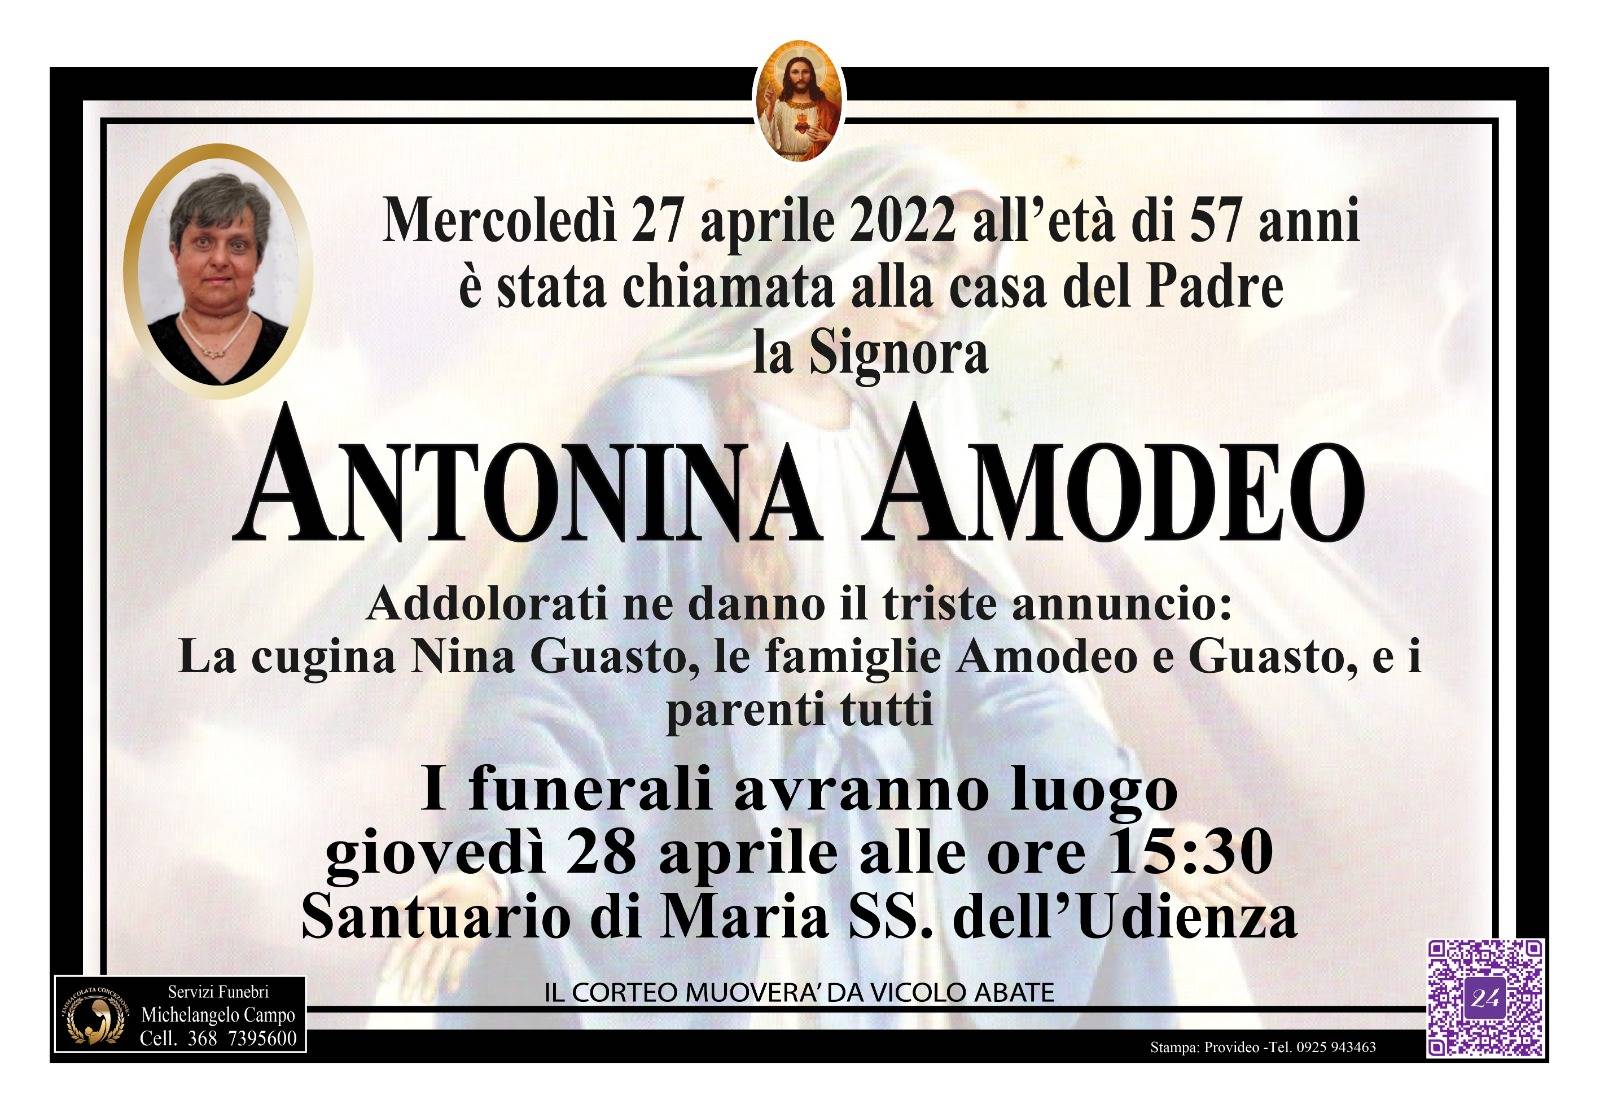 Antonina Amodeo